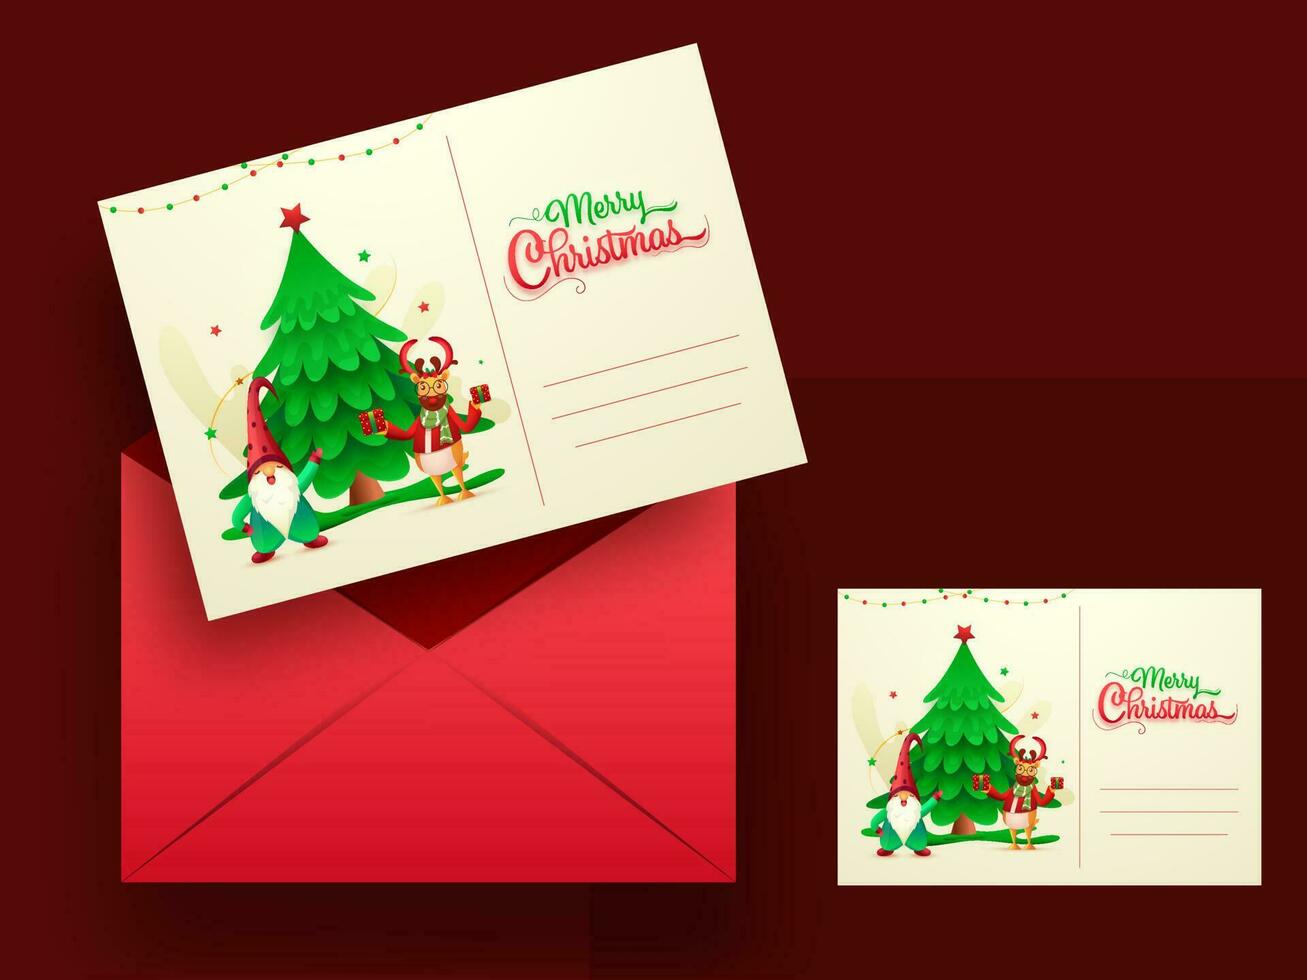 vrolijk Kerstmis groet kaarten of uitnodiging met rood envelop illustratie. vector